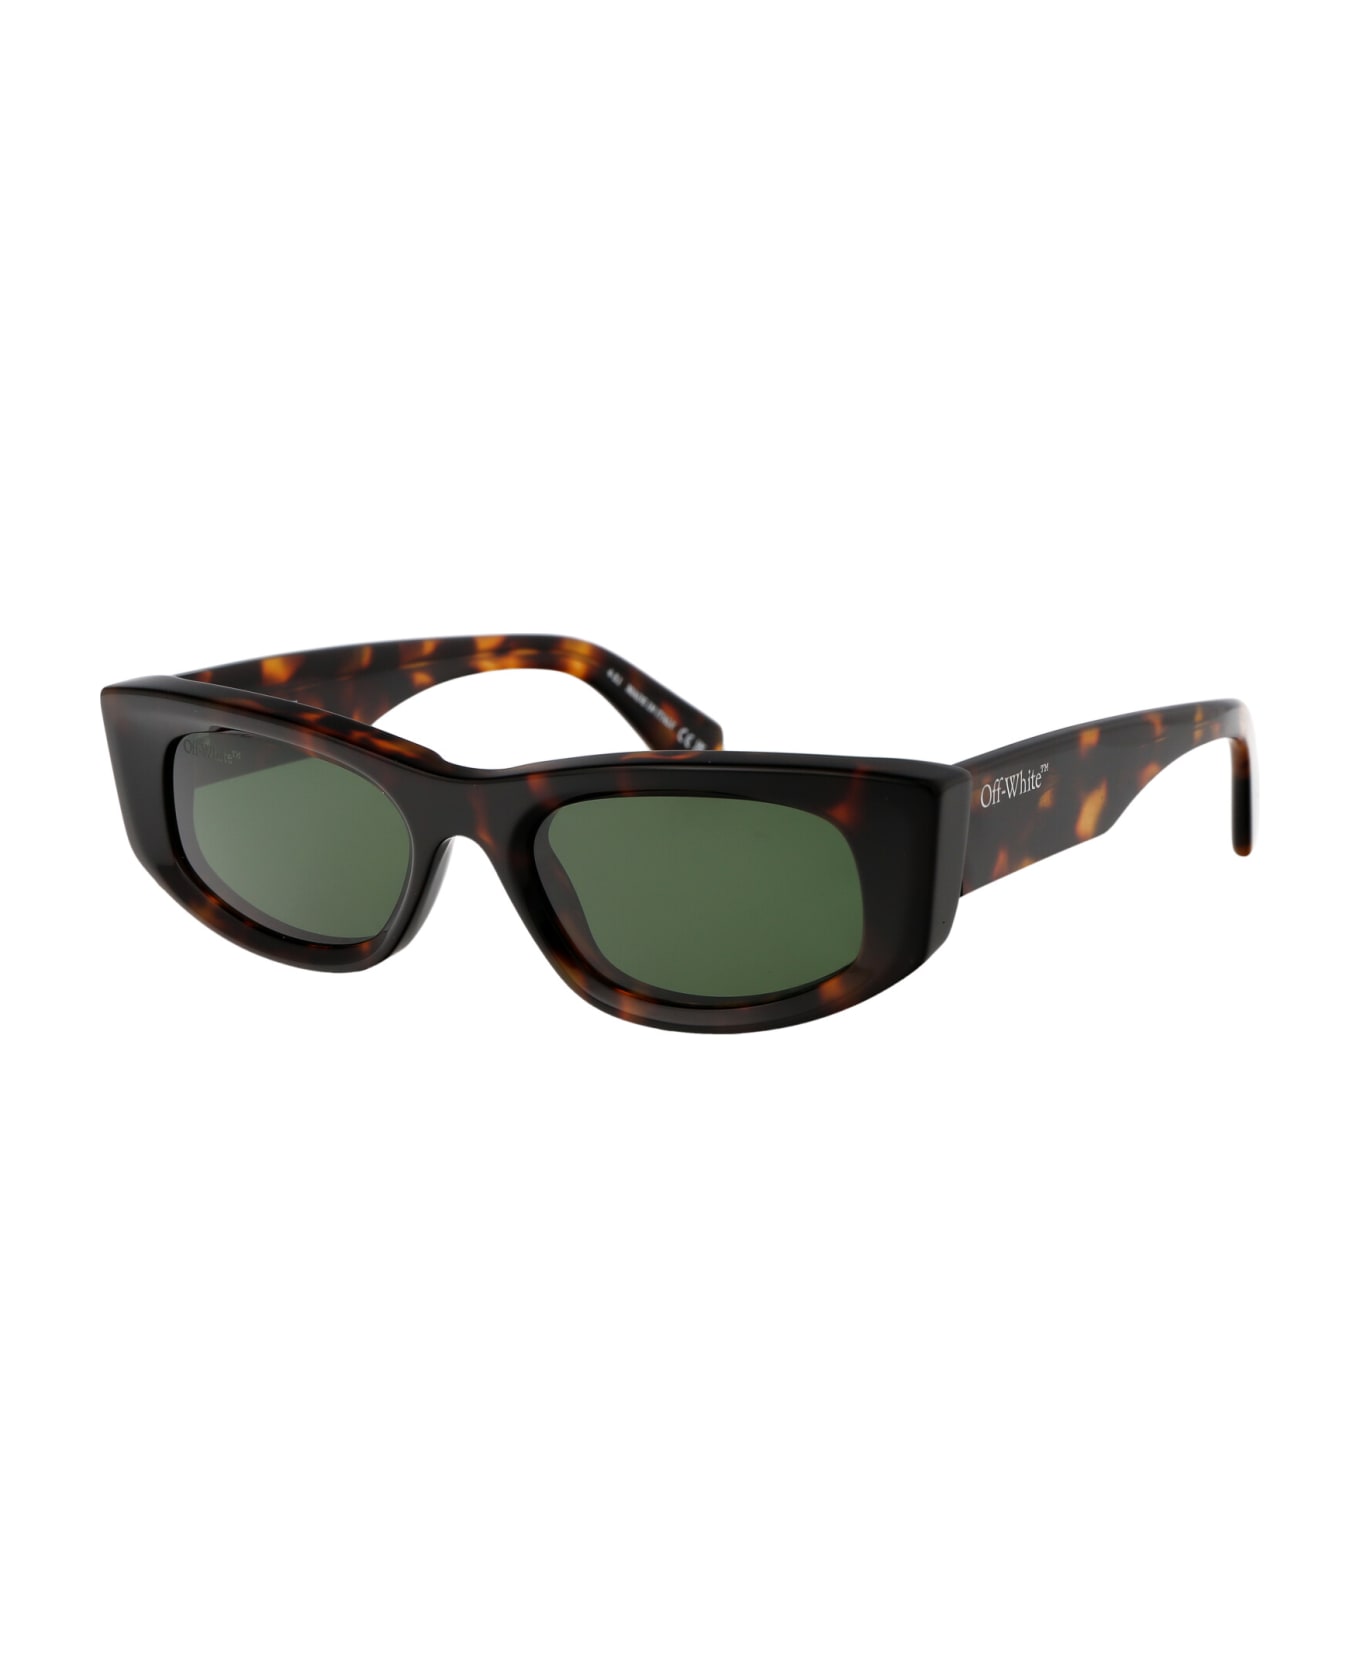 Off-White Matera Sunglasses - 6055 HAVANA